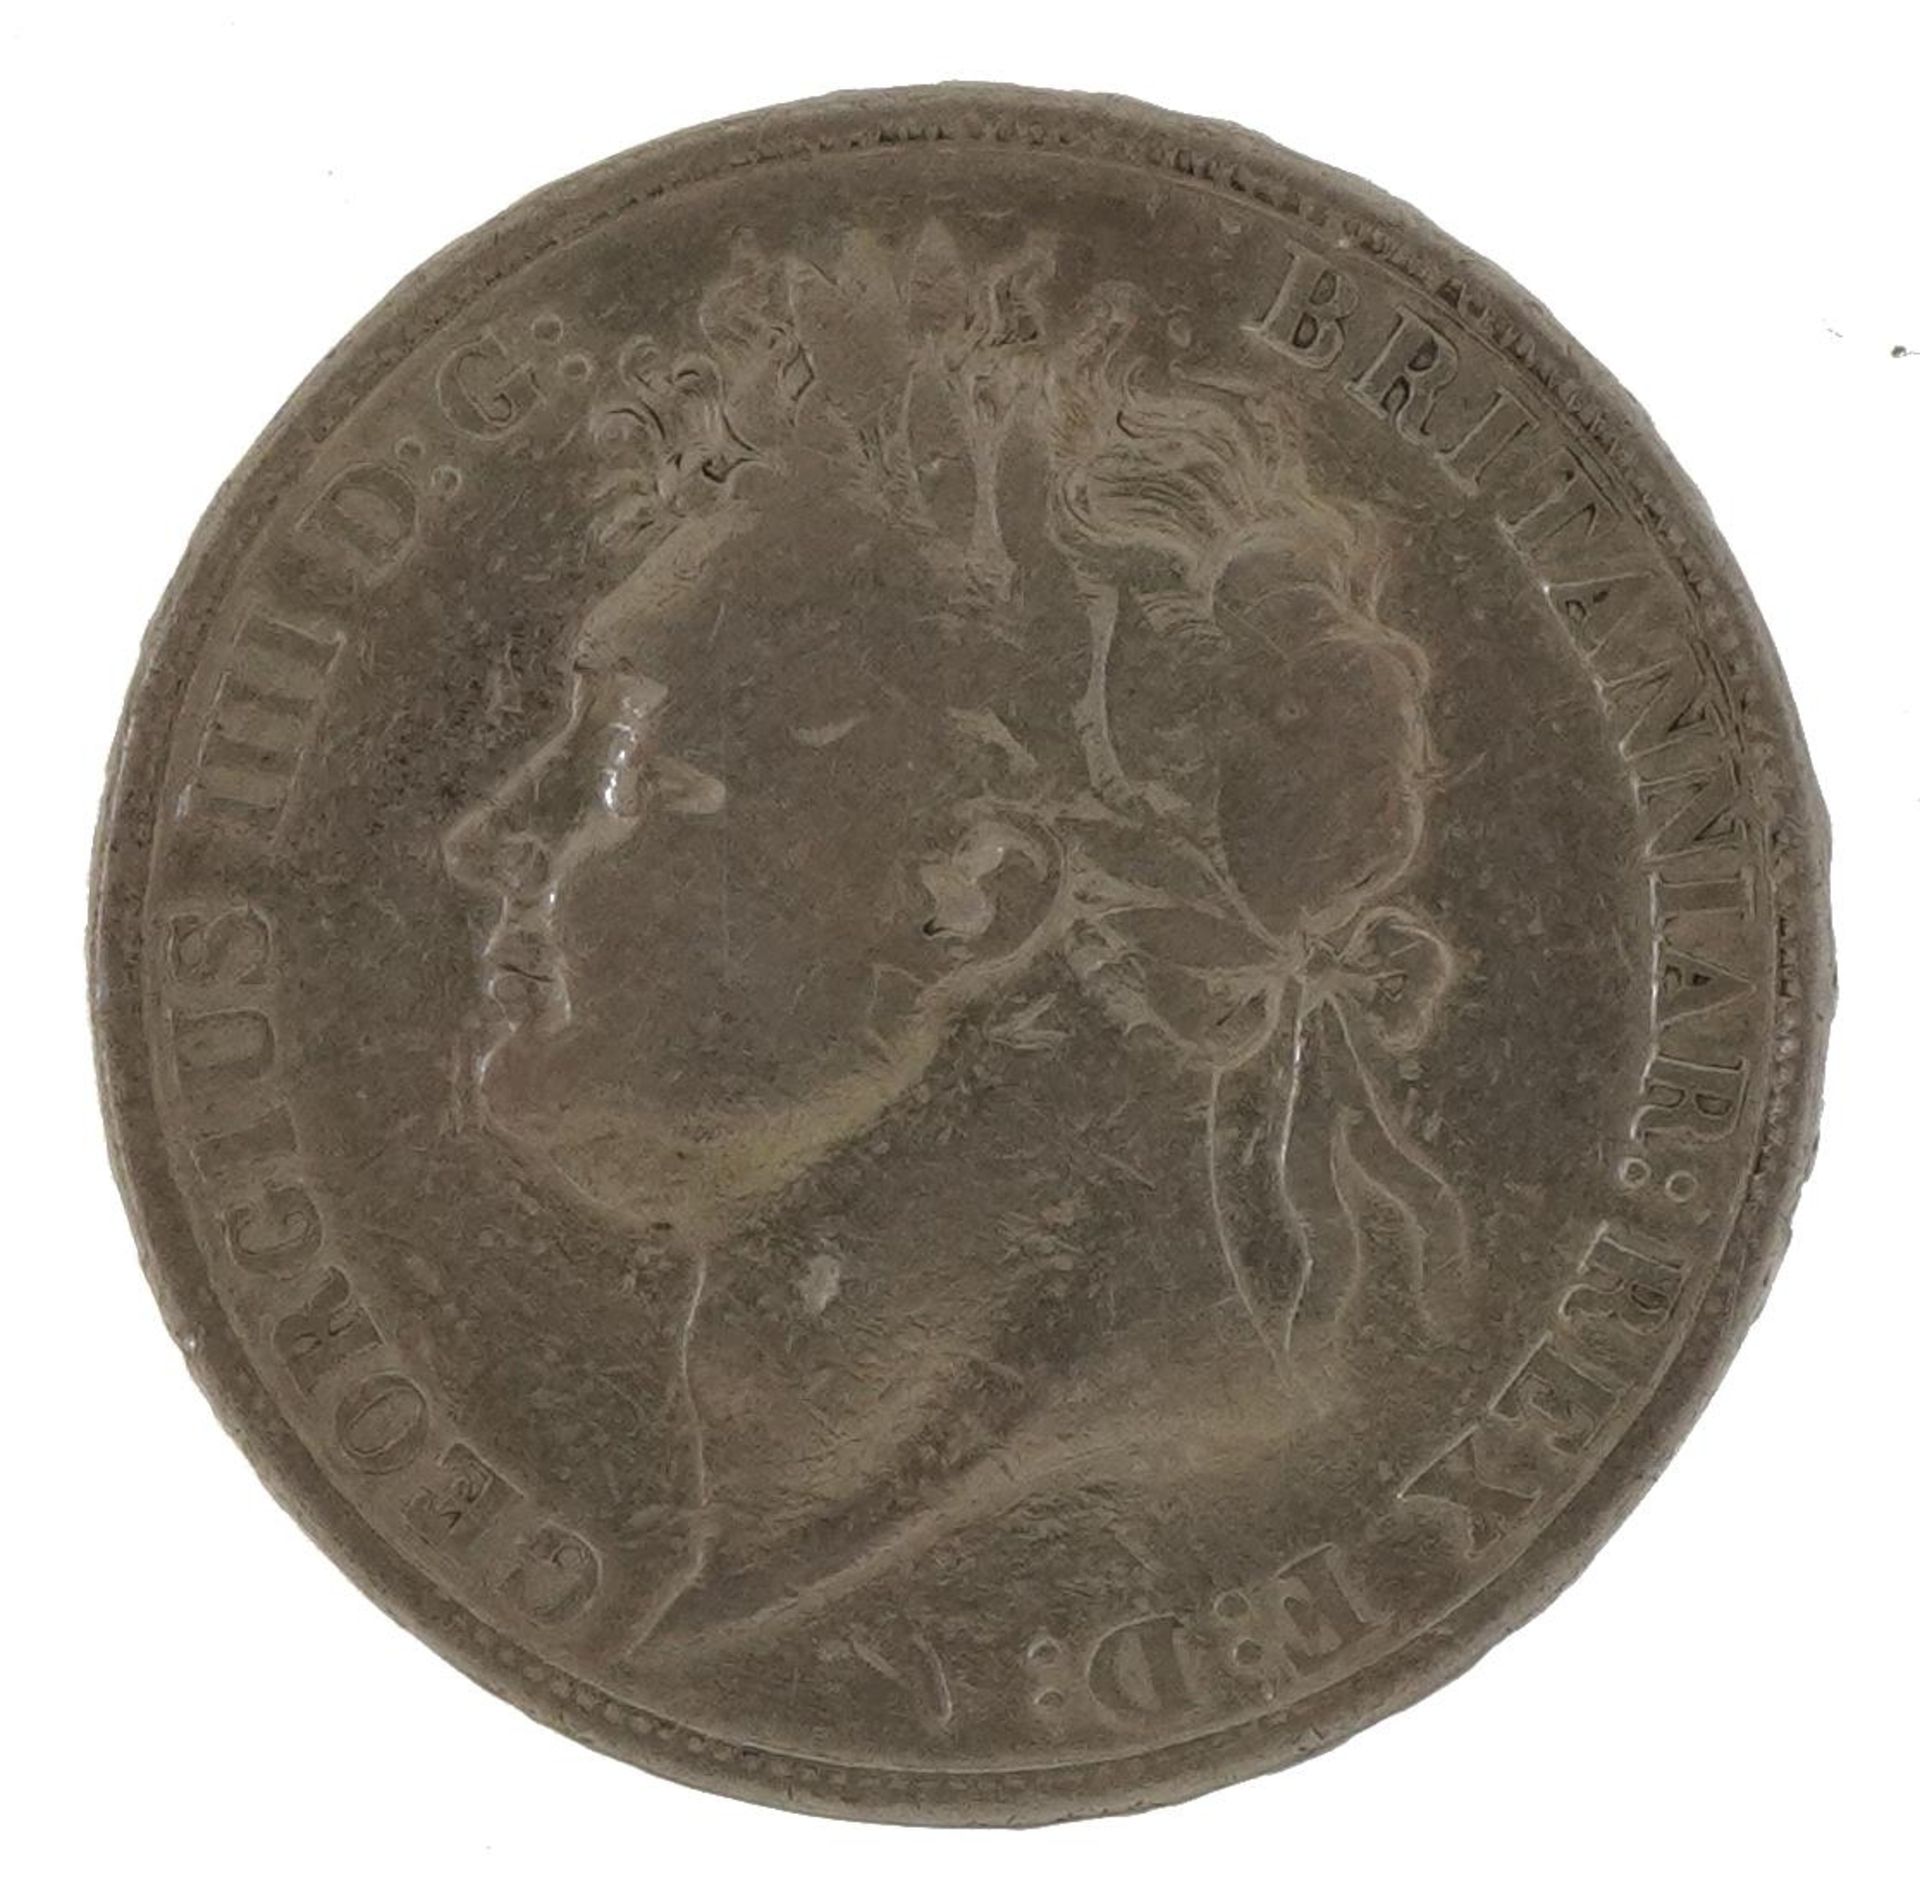 George IV 1821 silver crown - Image 2 of 3